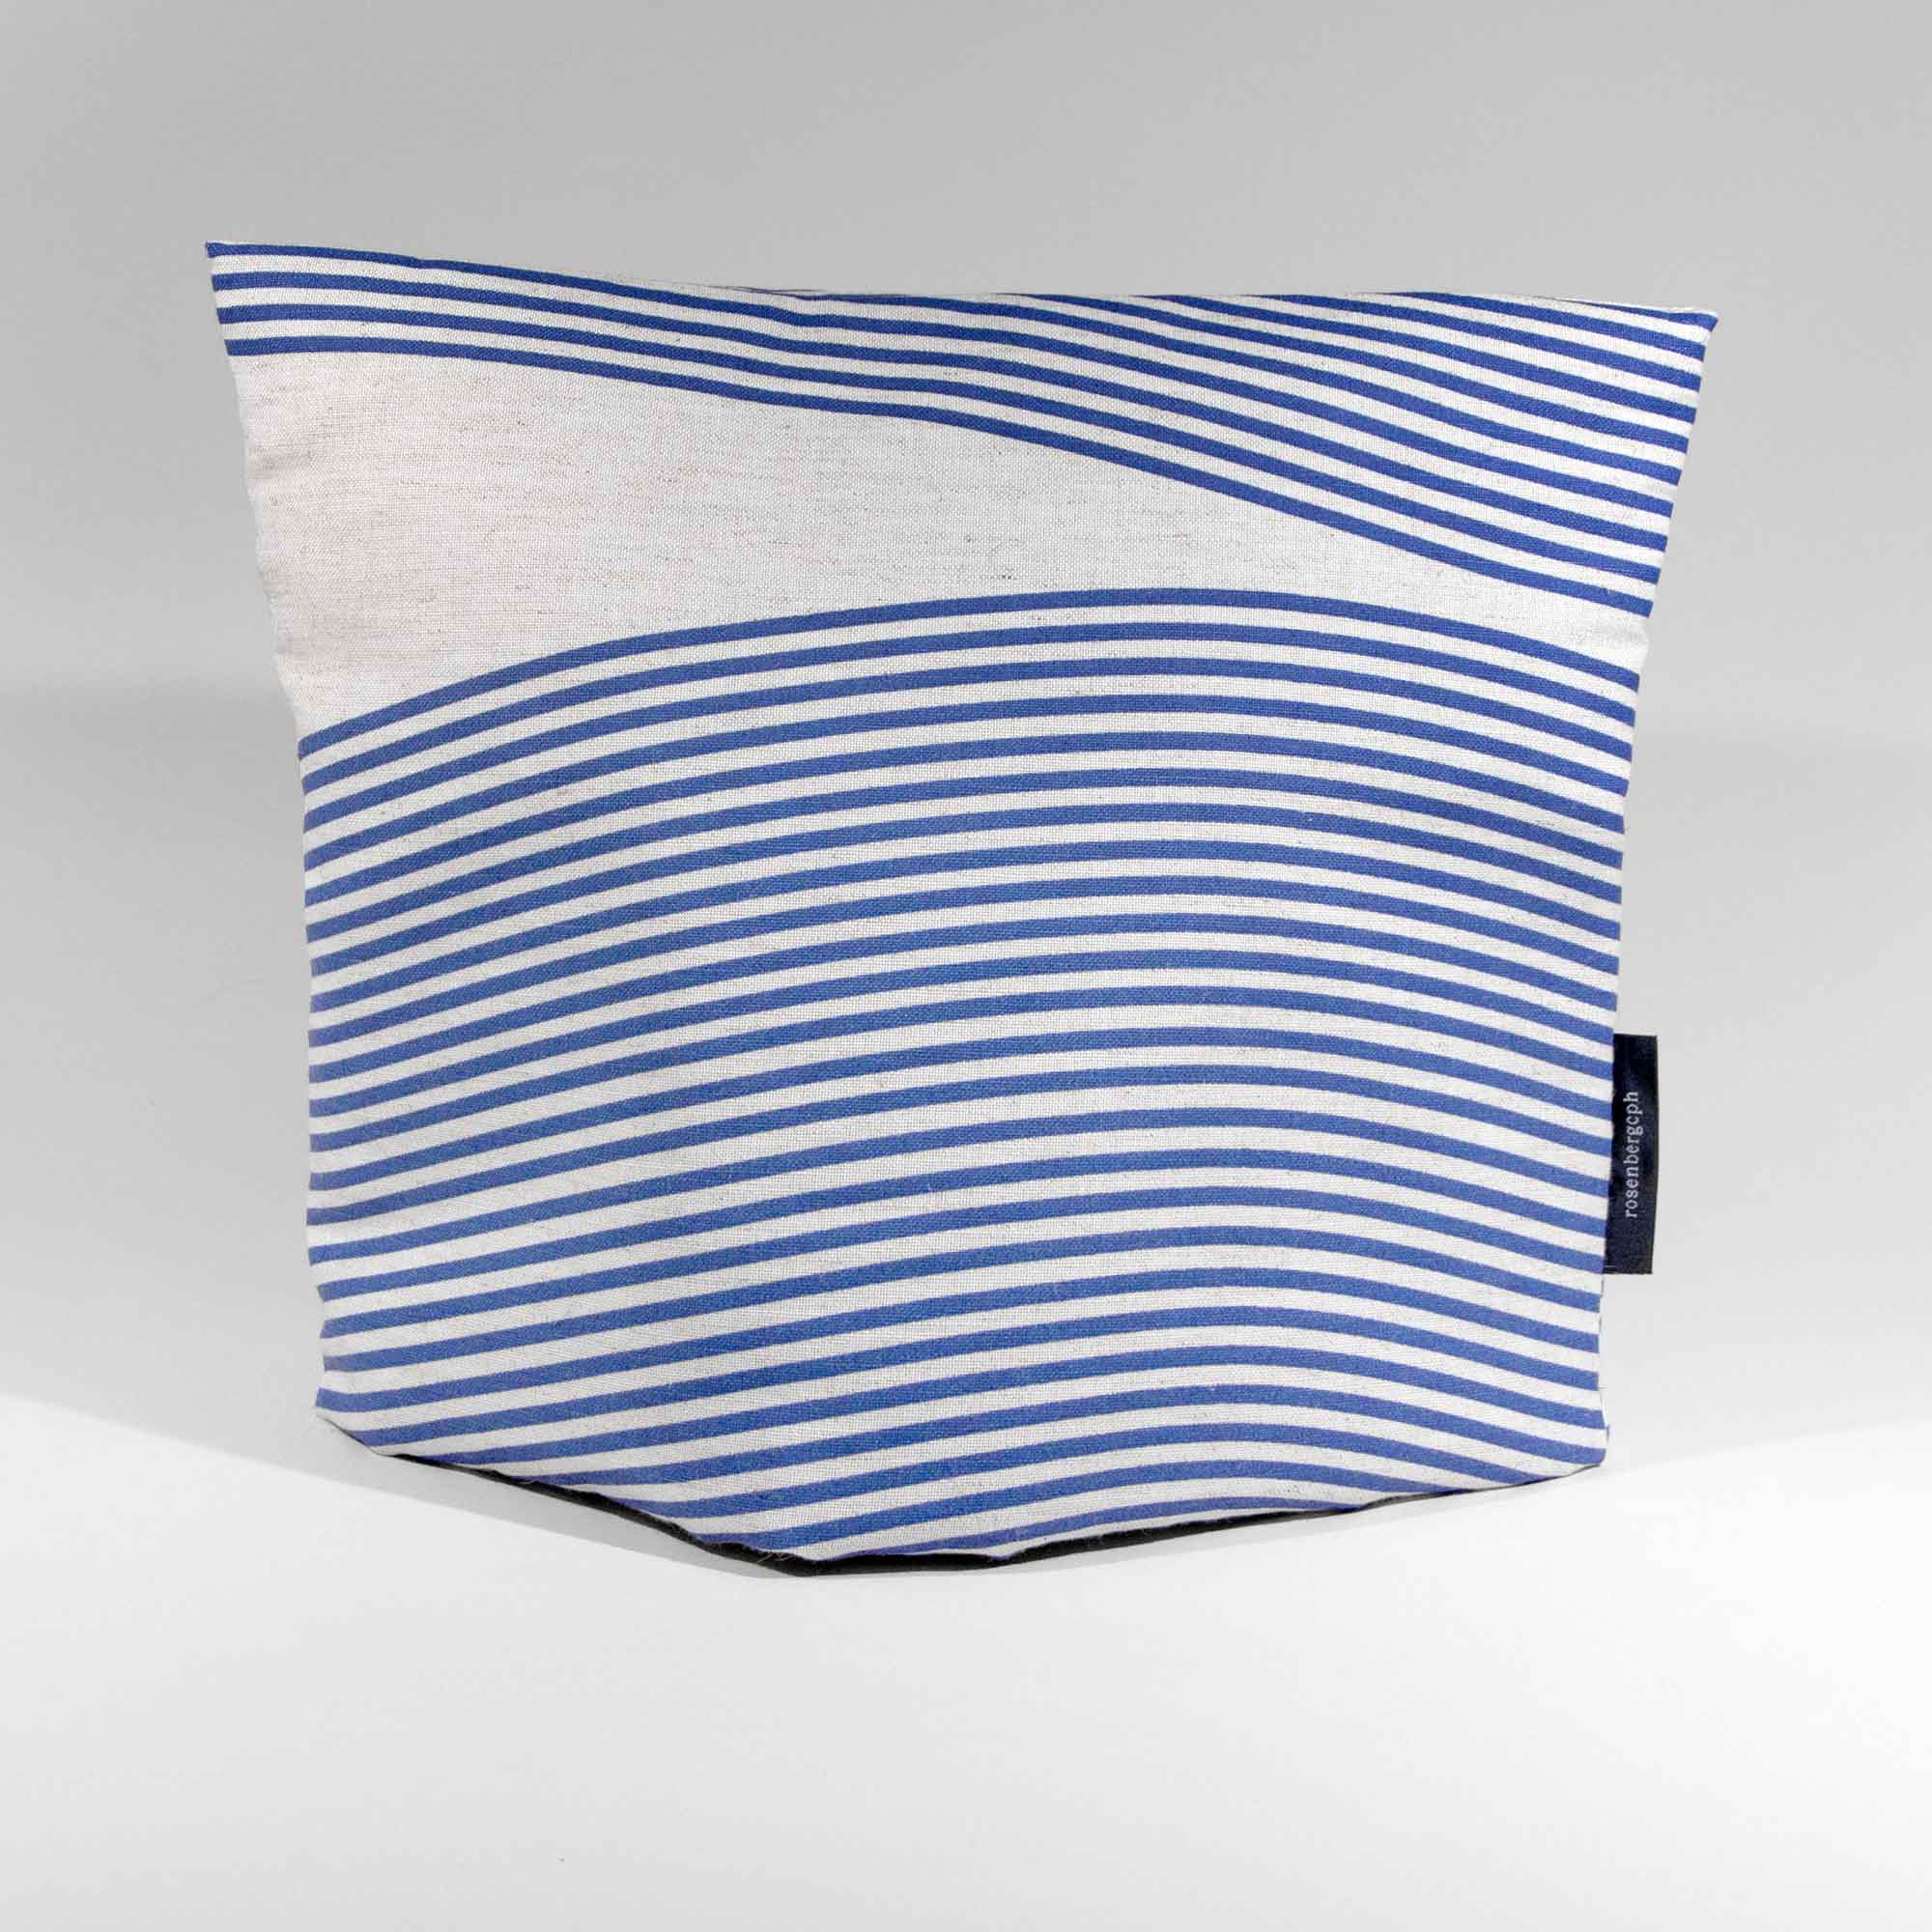 tea cosy, River blue, linen/polyester, design by Anne Rosenberg, RosenbergCph